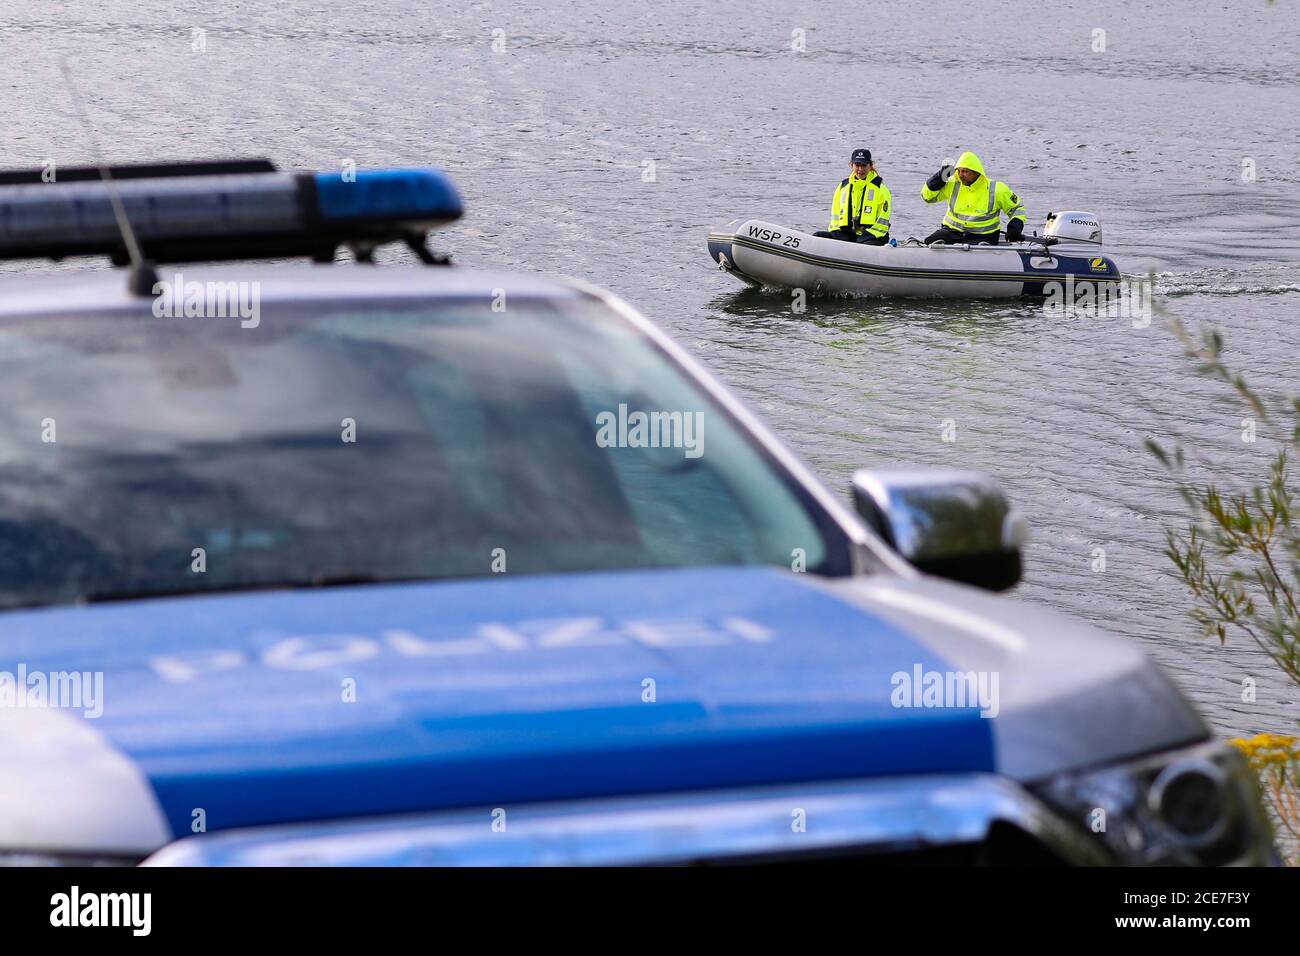 Dresda, Germania. 28 Agosto 2020. Poliziotti della polizia dell'acqua con motoscafo su un lago. In primo piano ha lasciato una macchina di polizia. Credit: Tino Plunert/dpa-Zentralbild/ZB/dpa/Alamy Live News Foto Stock